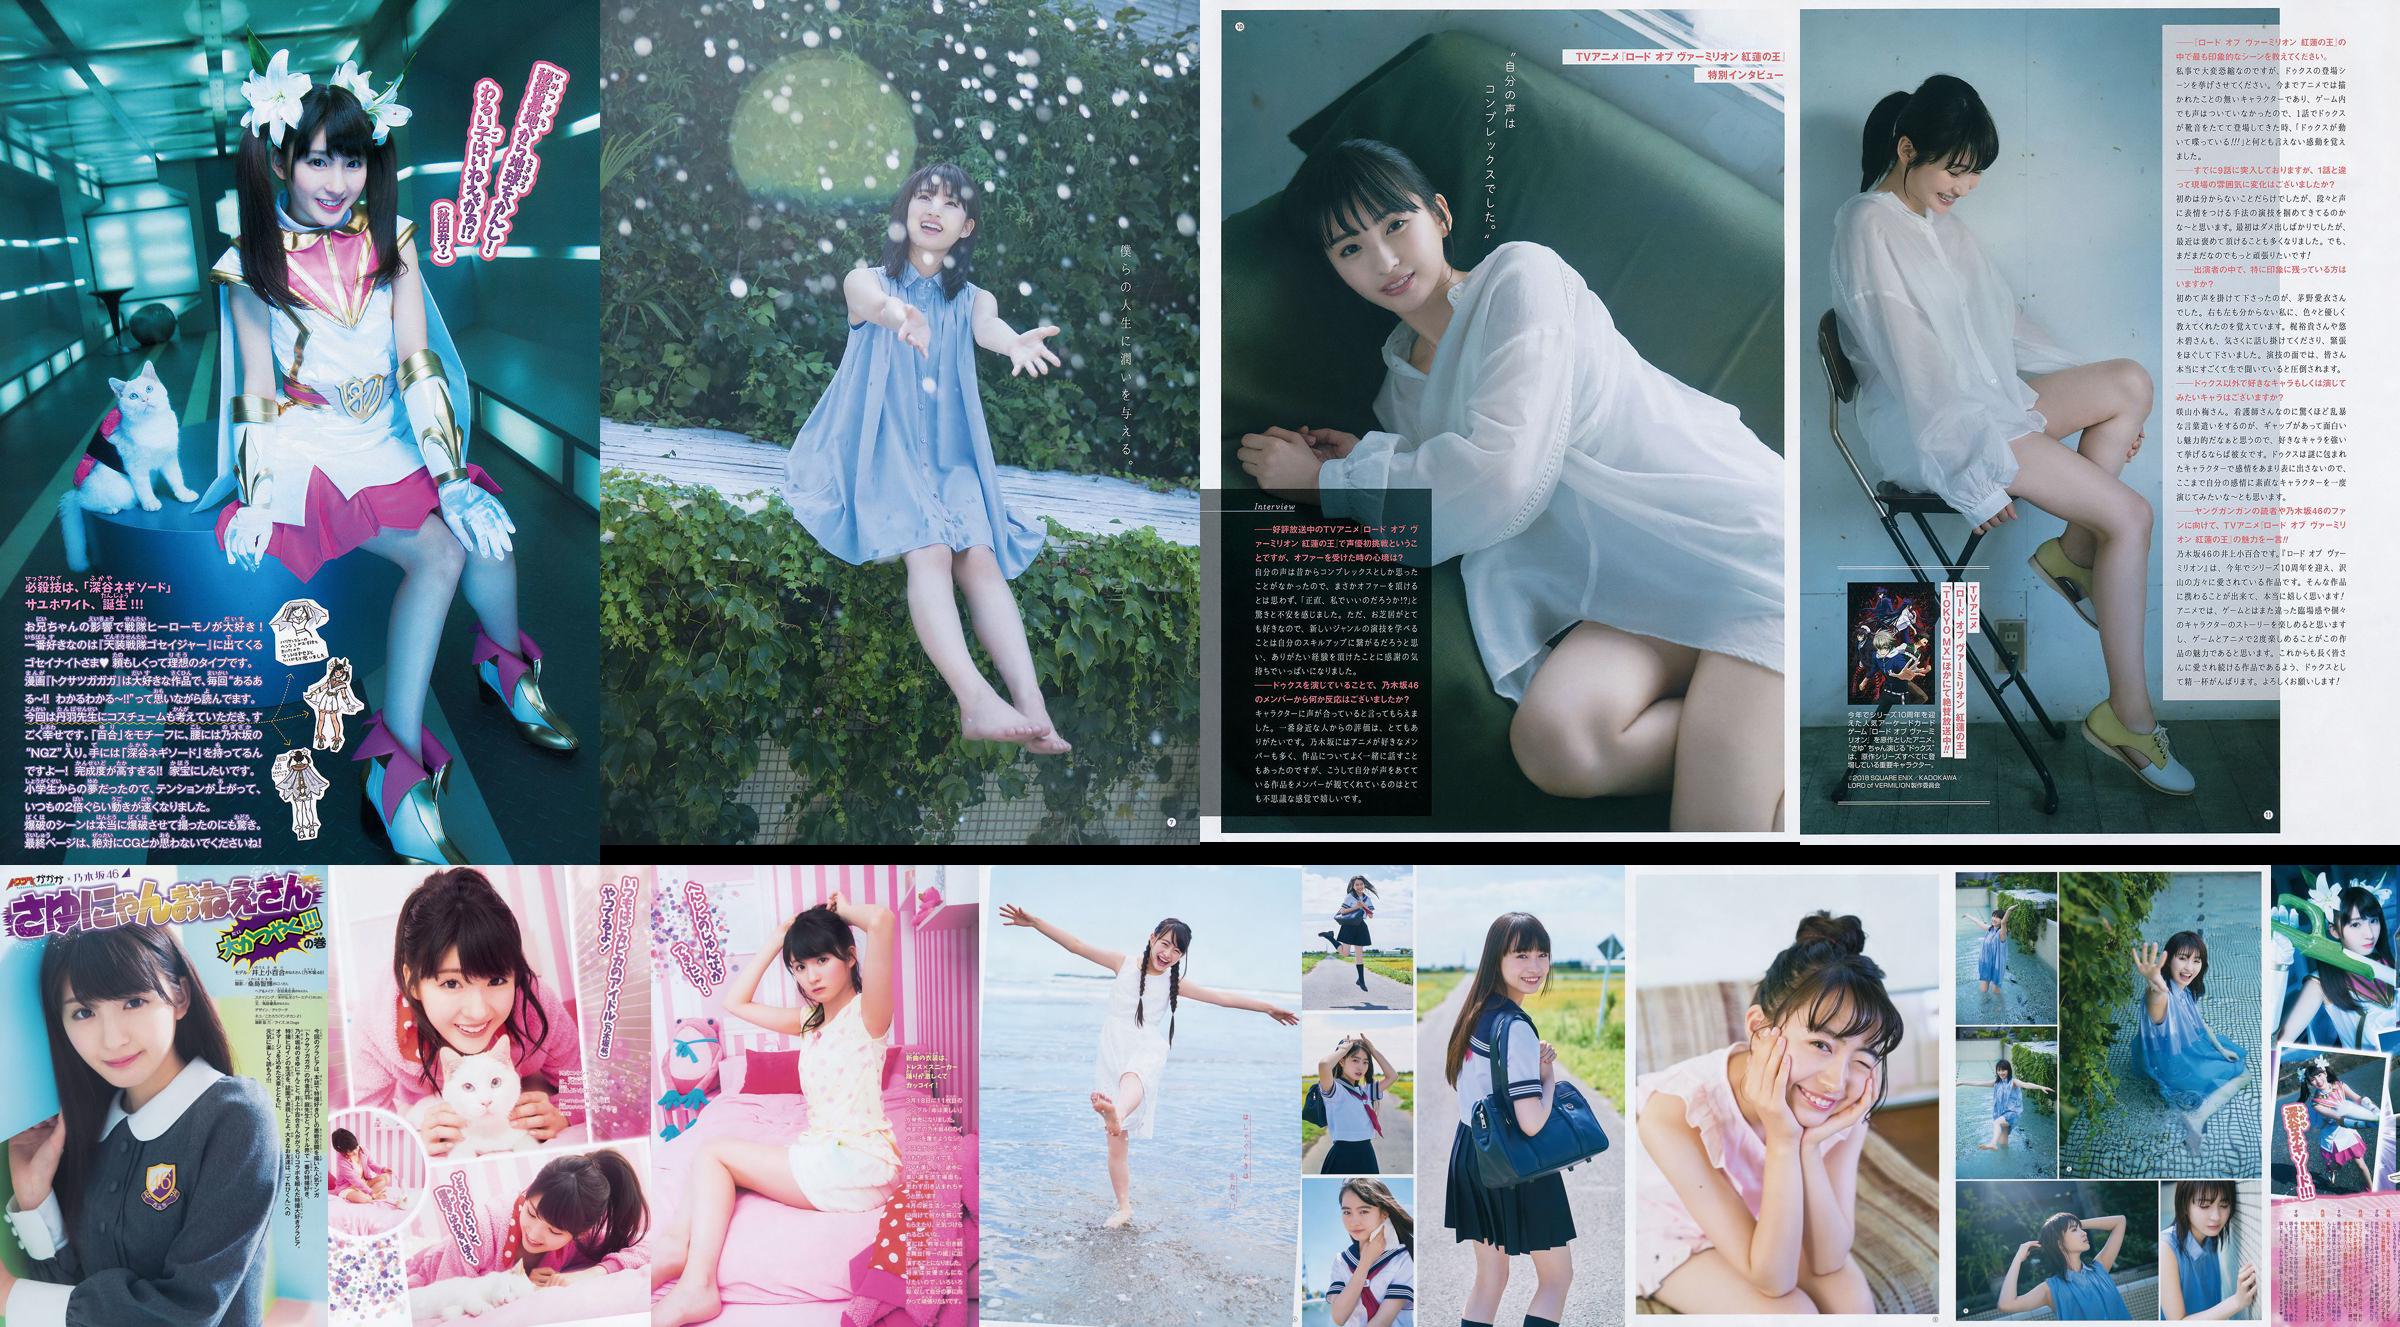 [Young Gangan] Sayuri Inoue Majalah Foto No.18 Pasir Asli 2018 No.b32dee Halaman 1